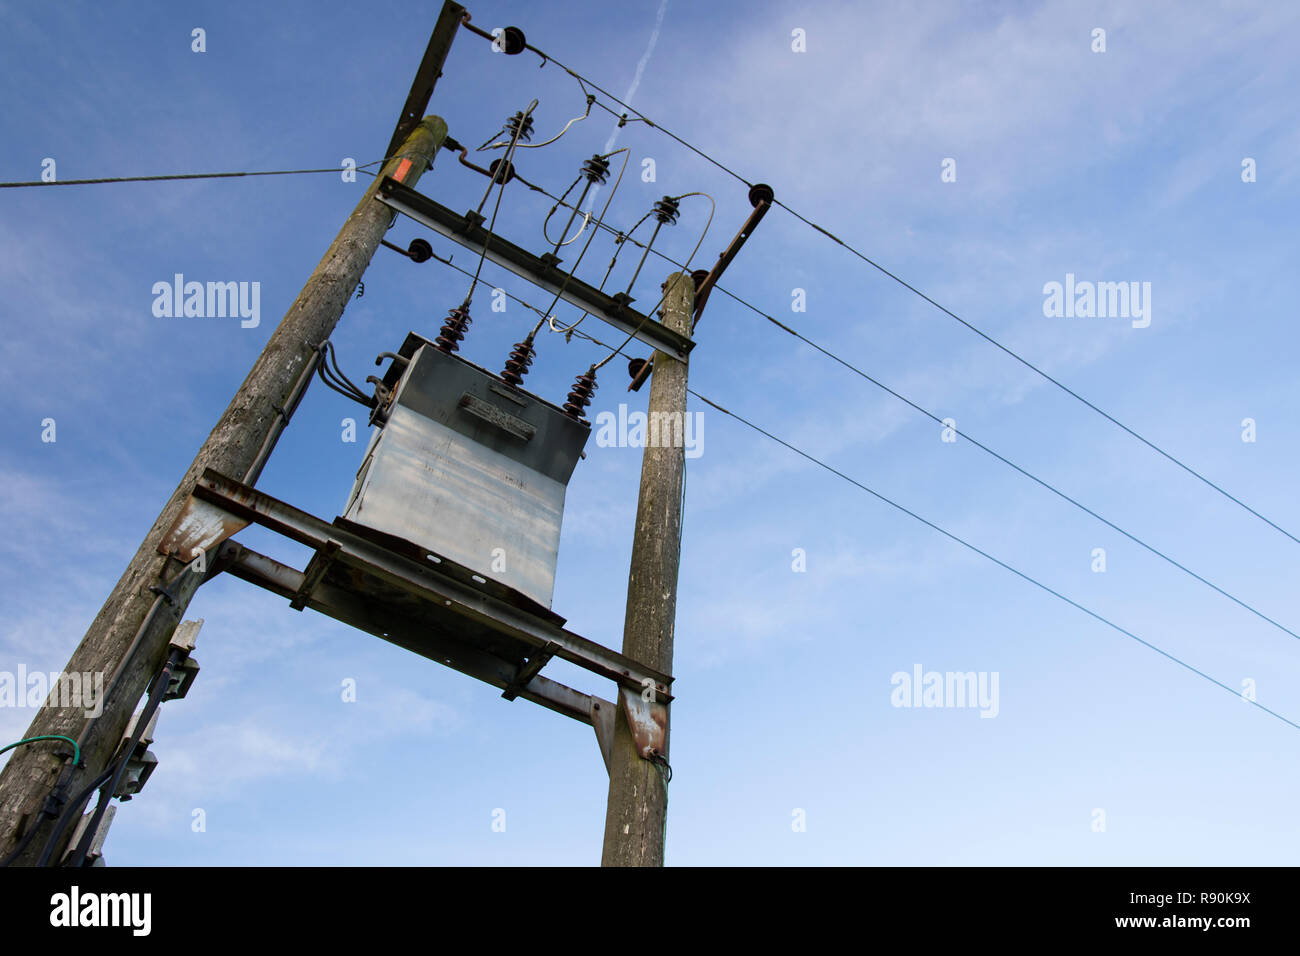 Images de puissance dynamique pylônes distribution against a blue sky Banque D'Images